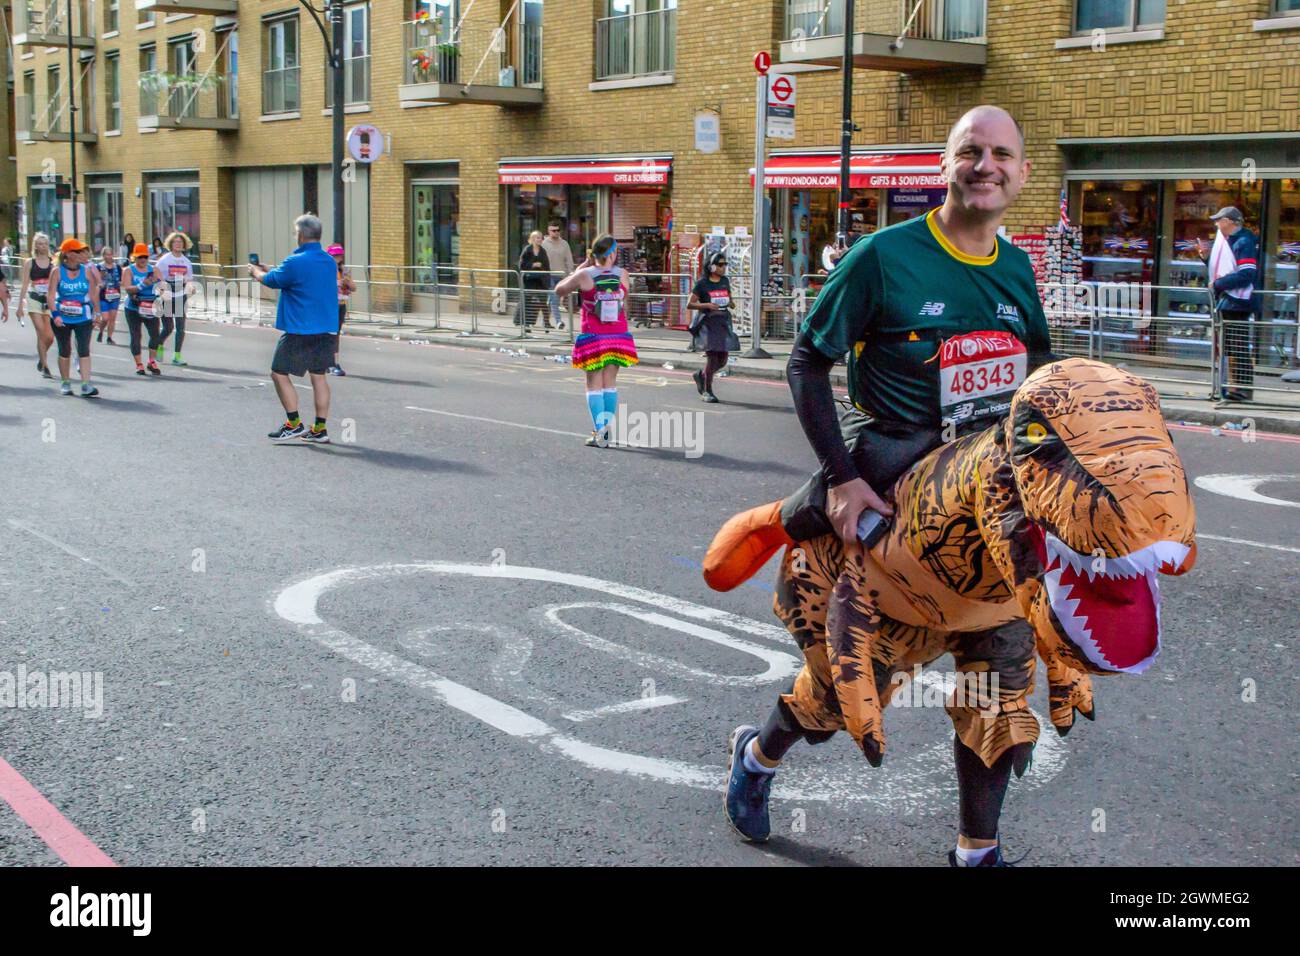 TOWER BRIDGE, LONDRA, INGHILTERRA - 03 ottobre 2021: Uomo che indossa un costume da dinosauro alla Maratona di Londra Virgin Money Foto Stock